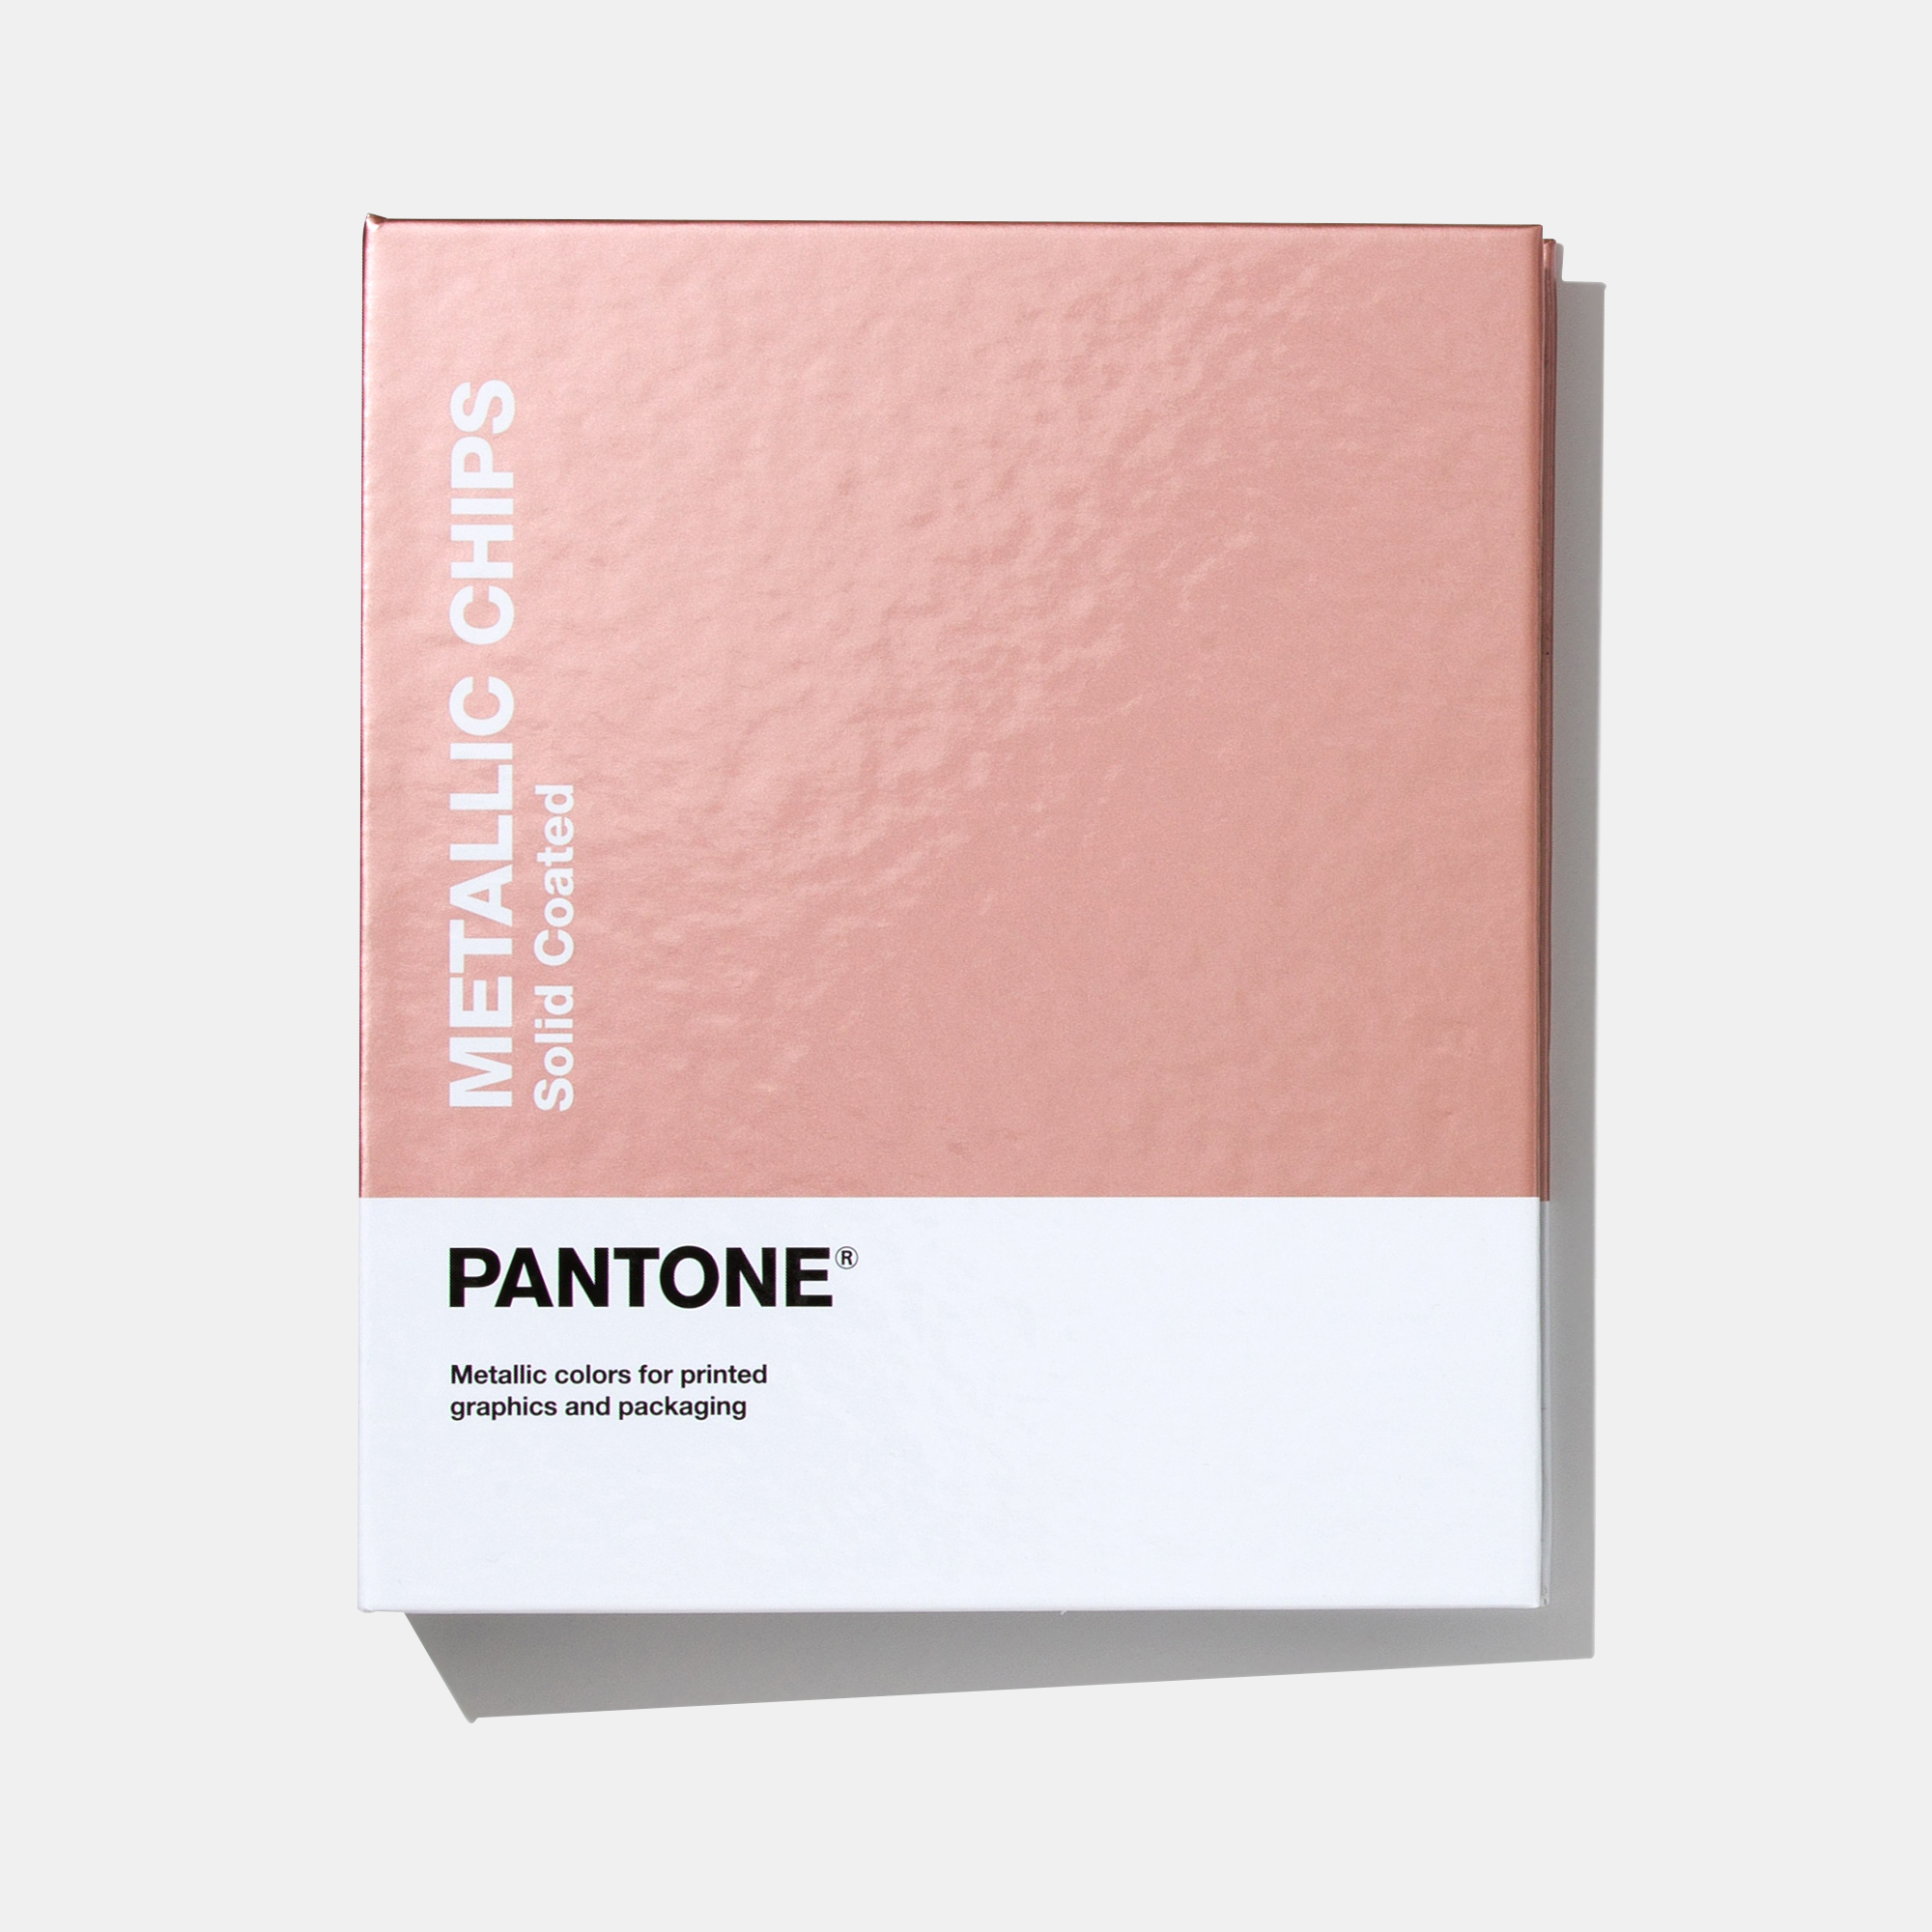 パントン(PANTONE) 色見本 パントン・メタリック・コーテッド・チップブック GB1507A『パントン正規品、シリアル番号あり』並行輸